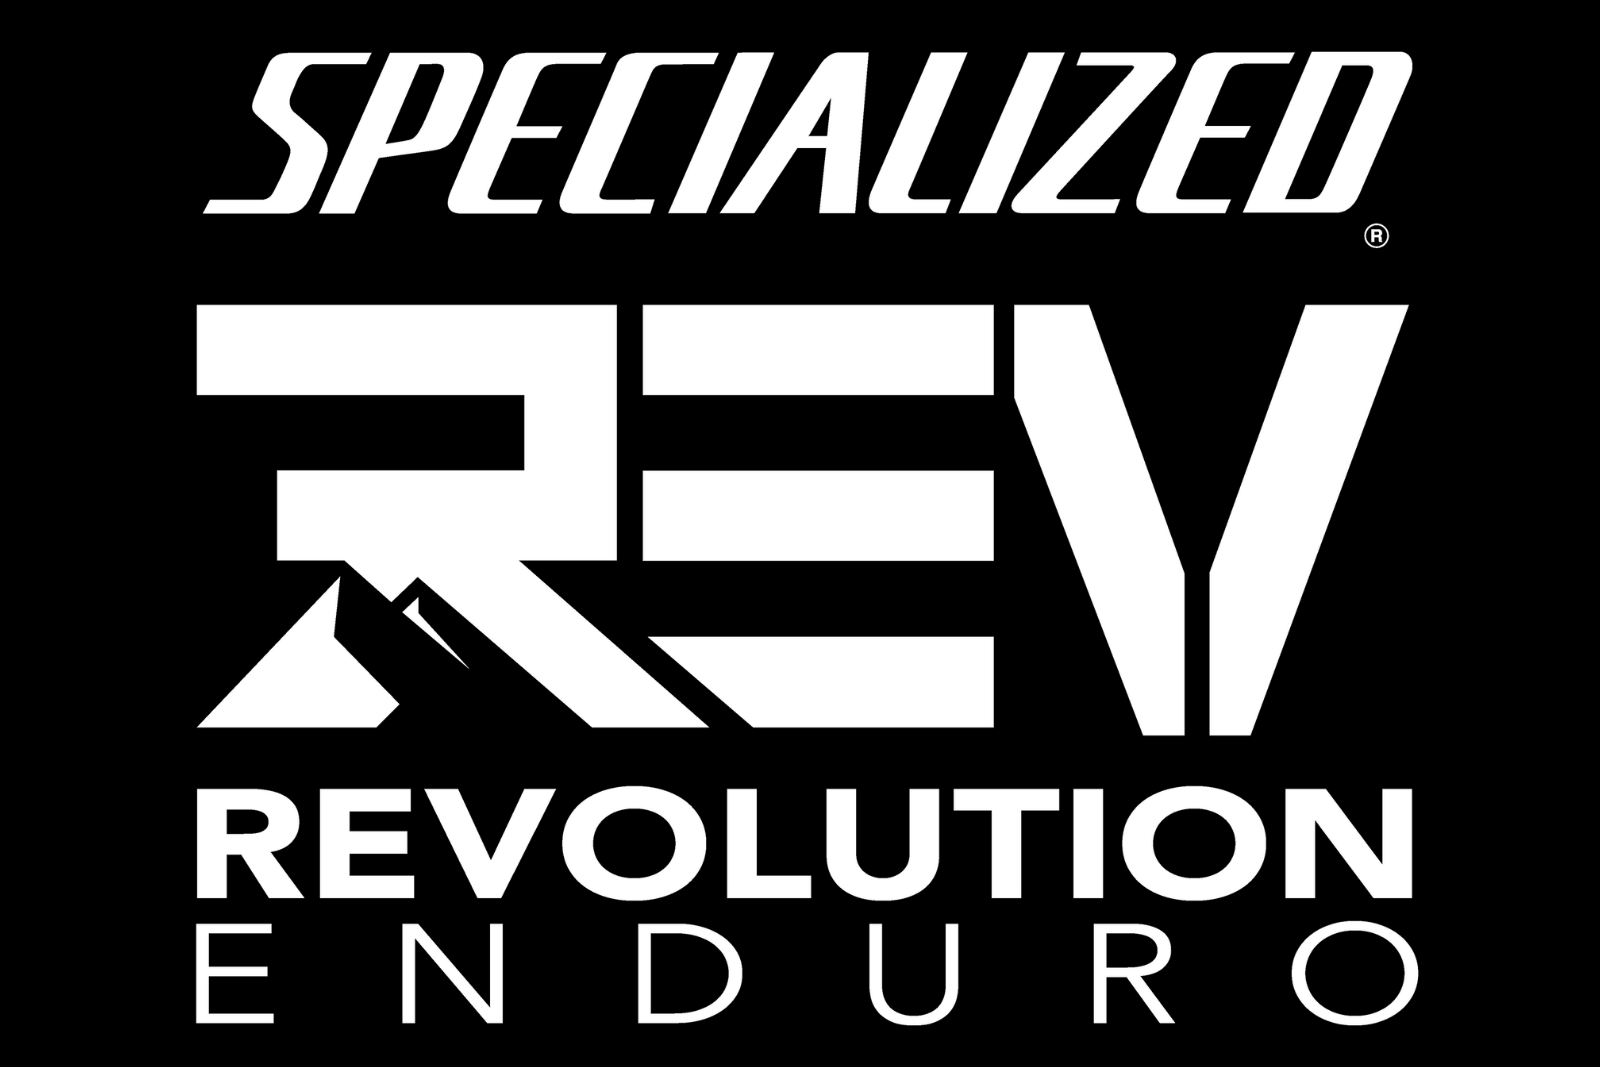 Revolution Enduro More Info